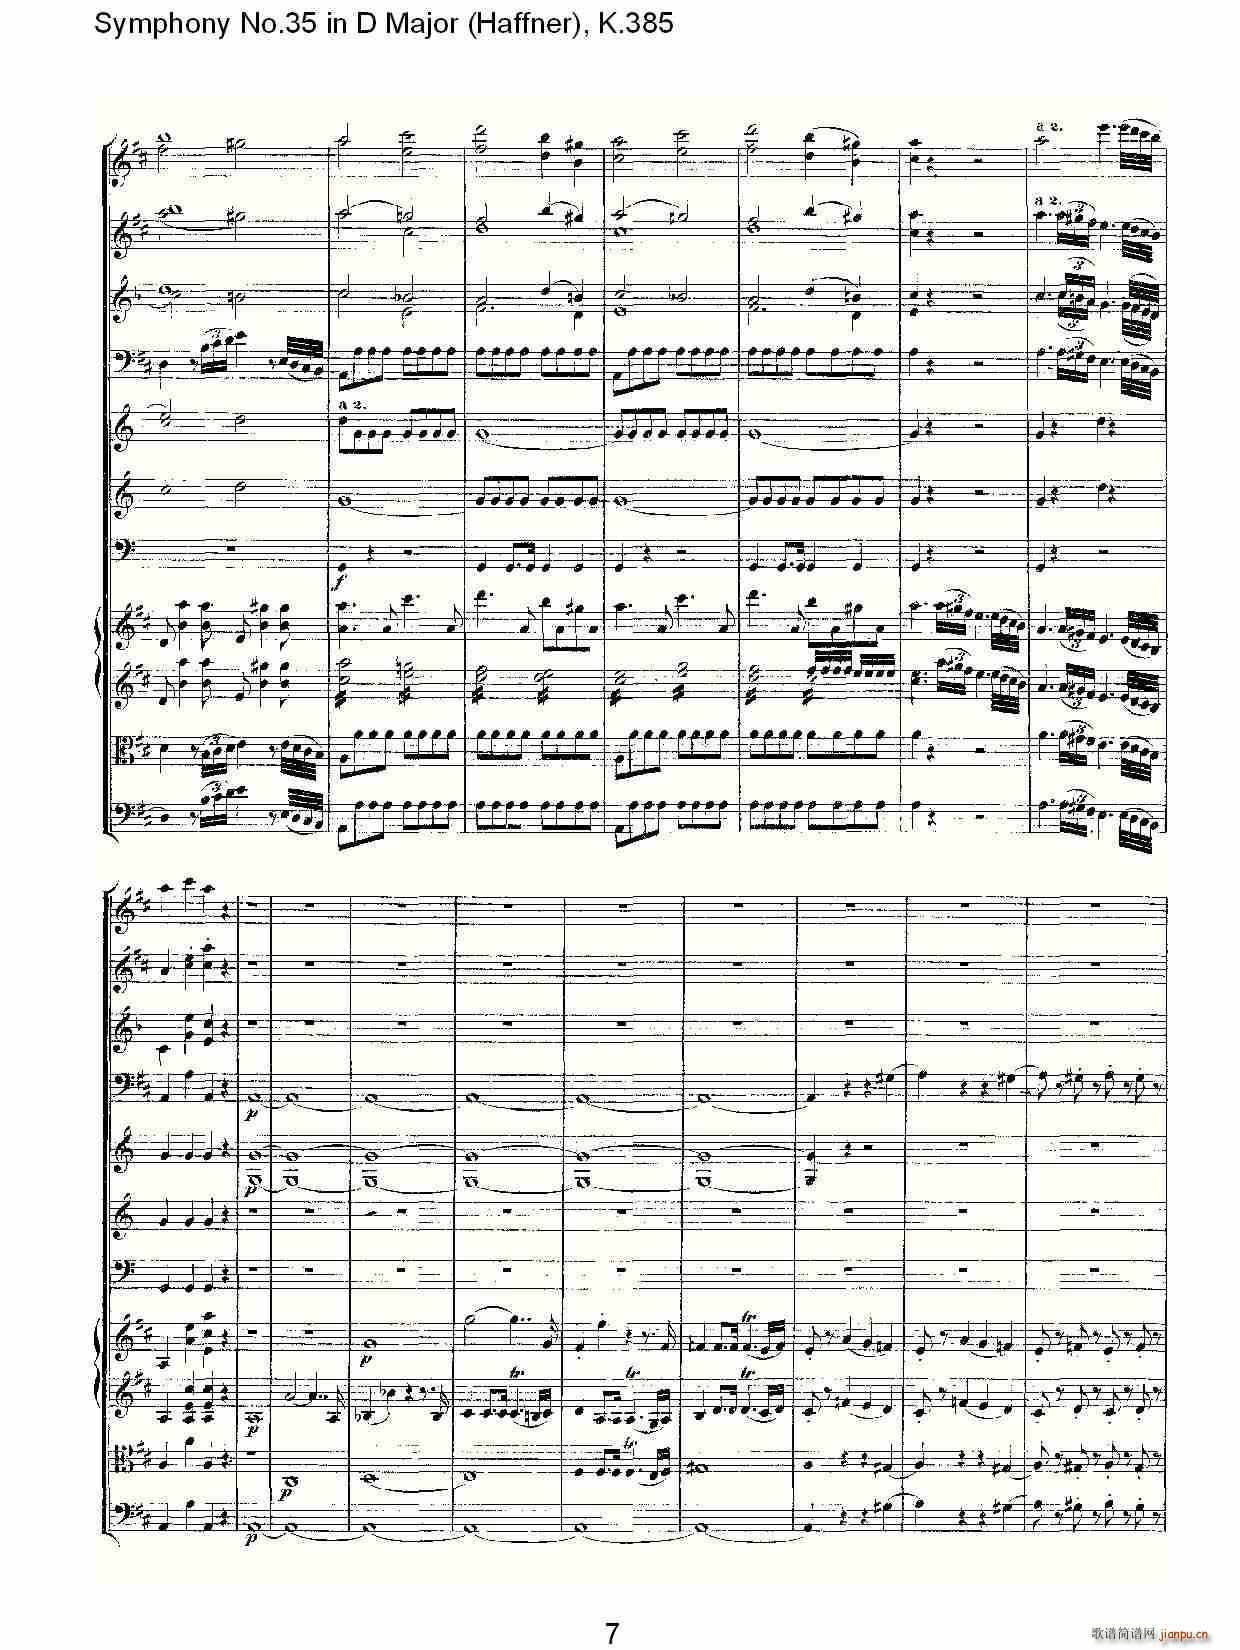 Symphony No.35 in D Major, K.385(ʮּ)7